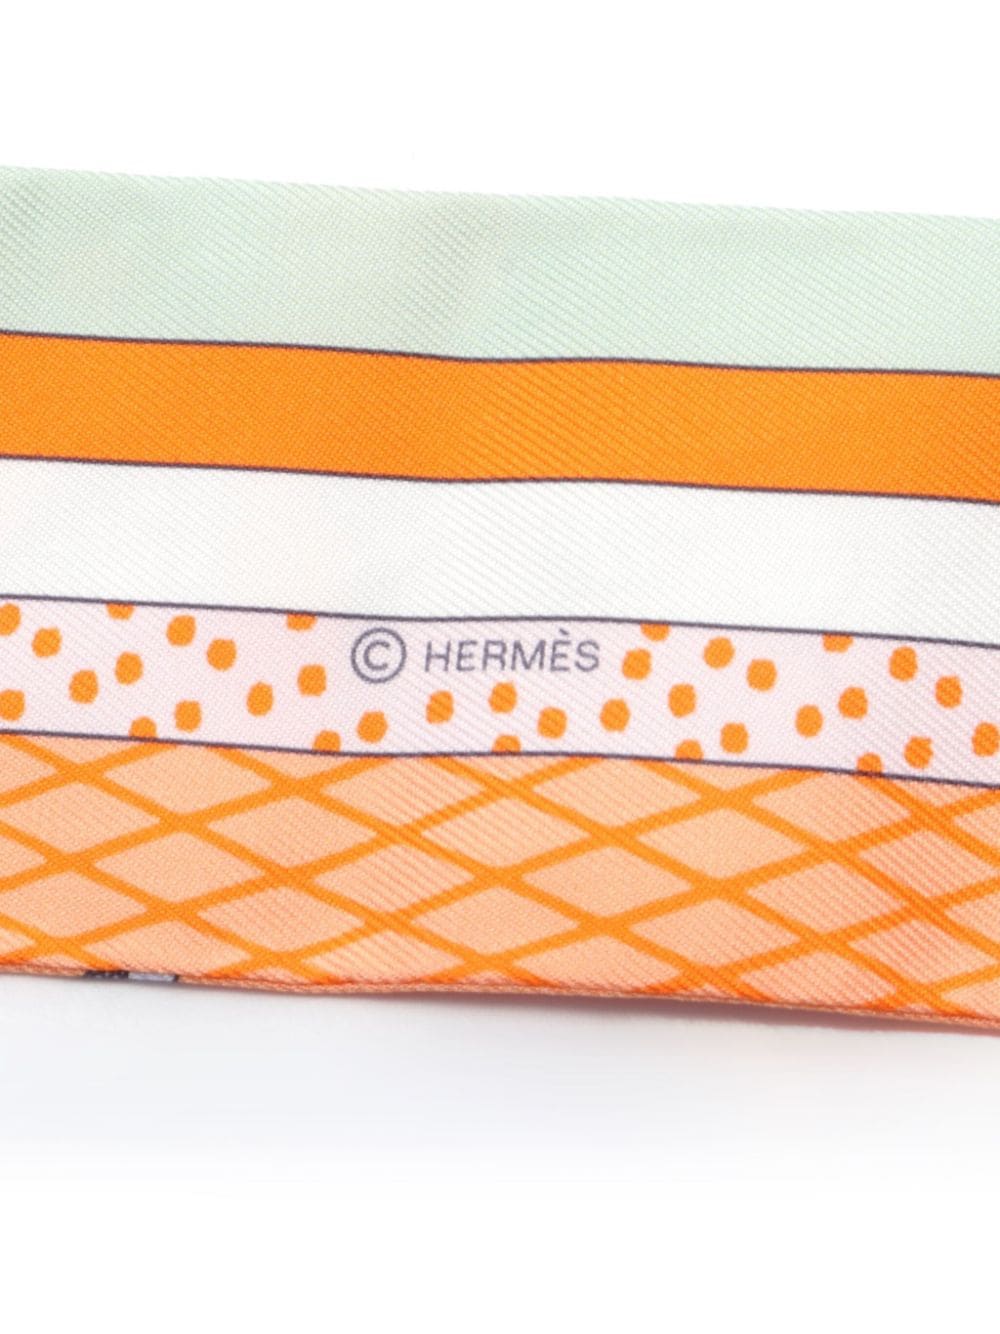 Hermès Pre-Owned 2010s zijden sjaal - Oranje